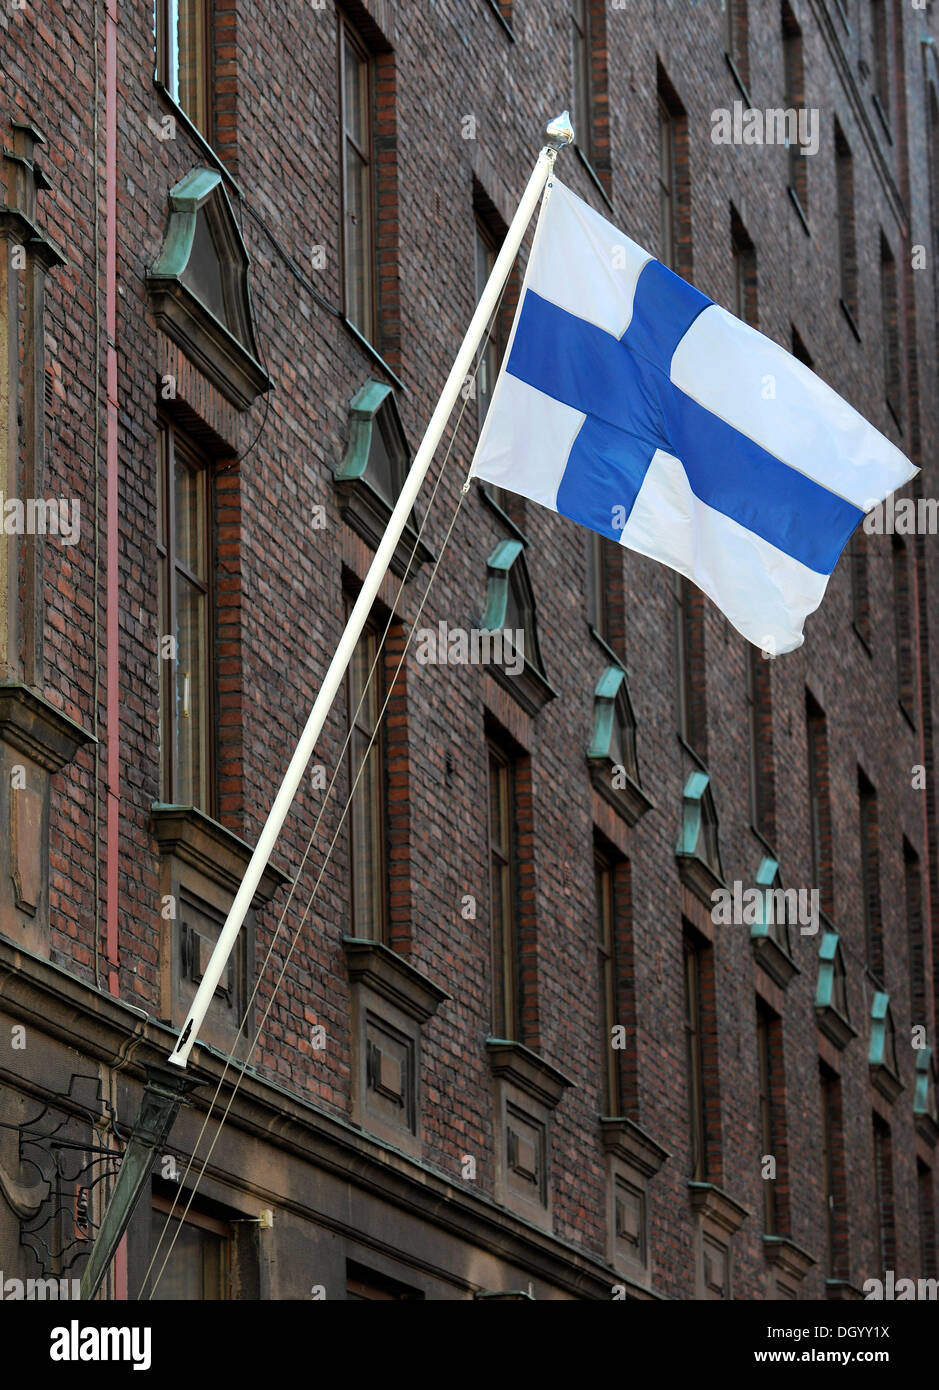 Drapeau national de la Finlande au vent, Finlande, Europe Banque D'Images